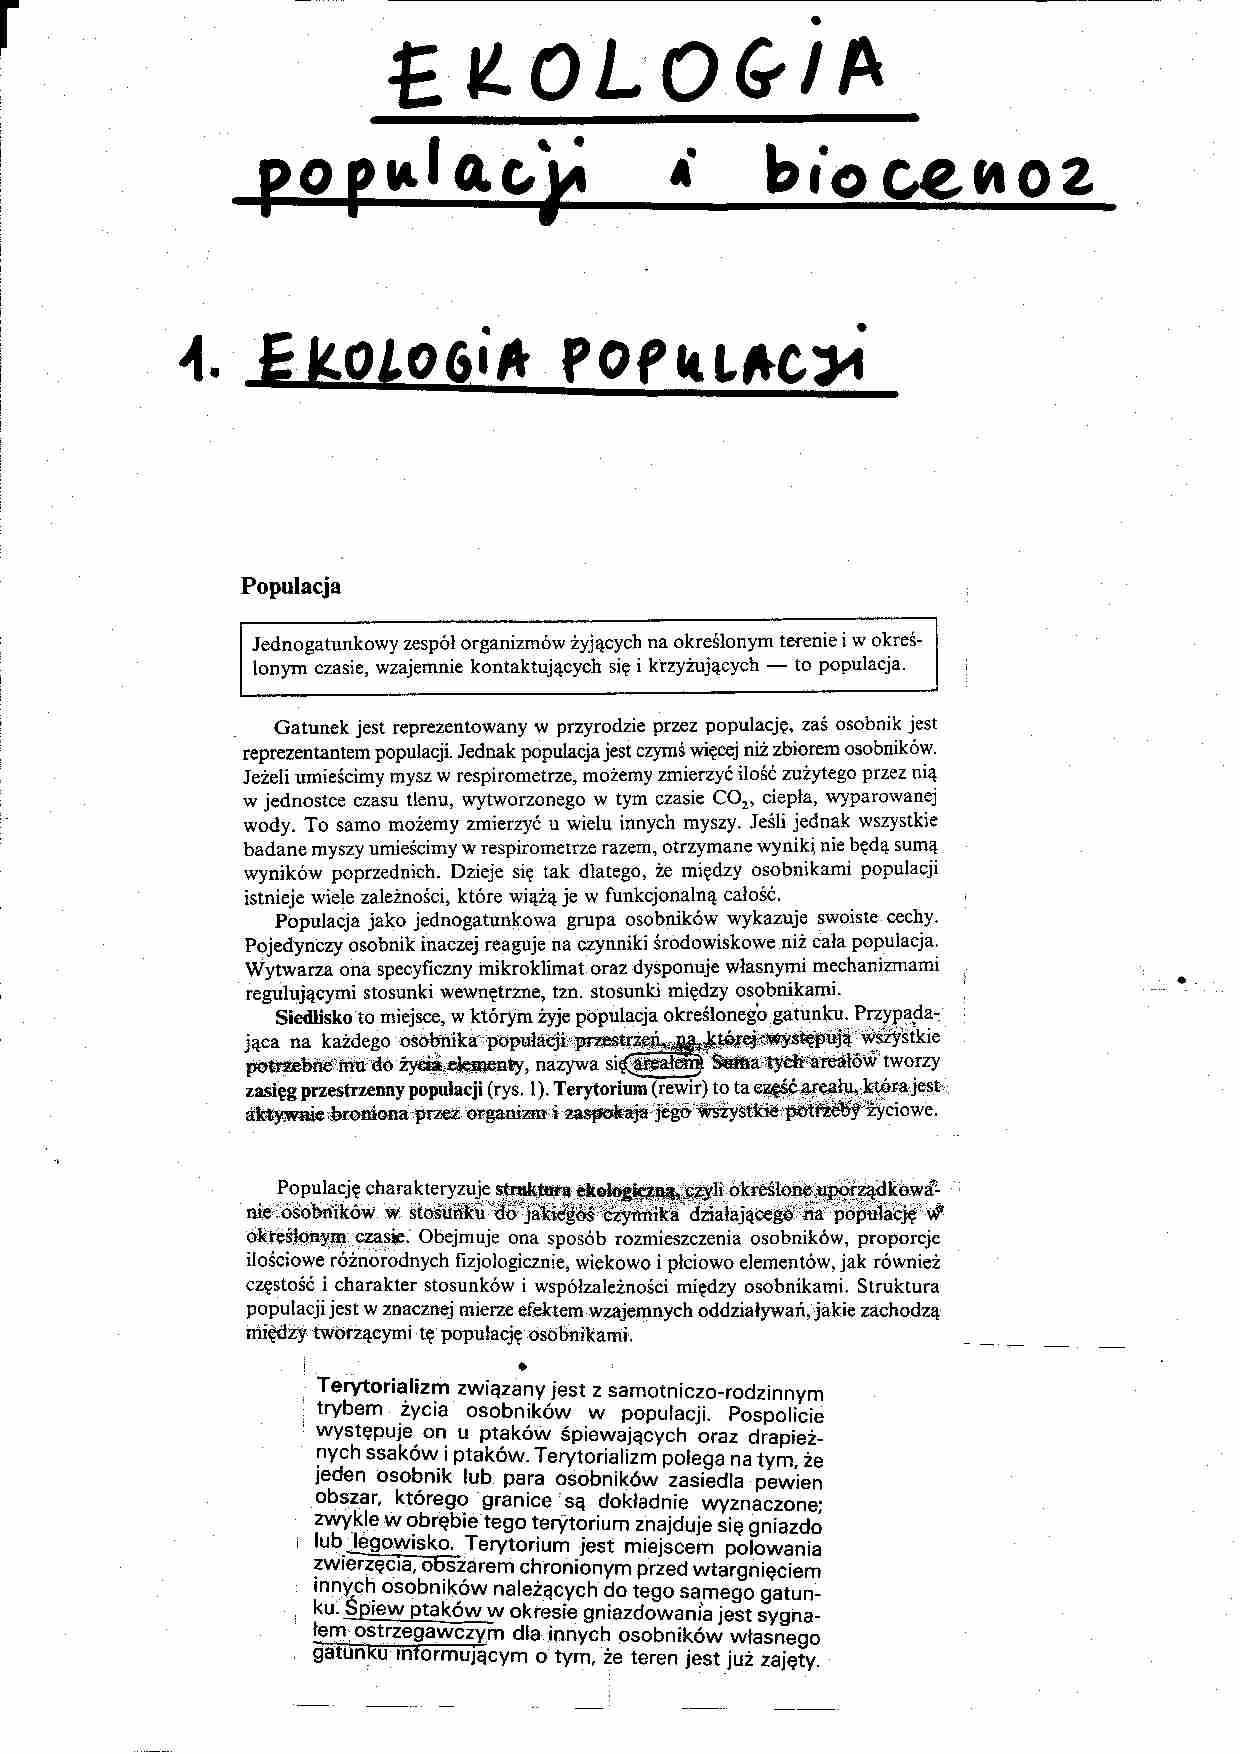  Ekologia populacji i biocenoz-opracowanie - strona 1